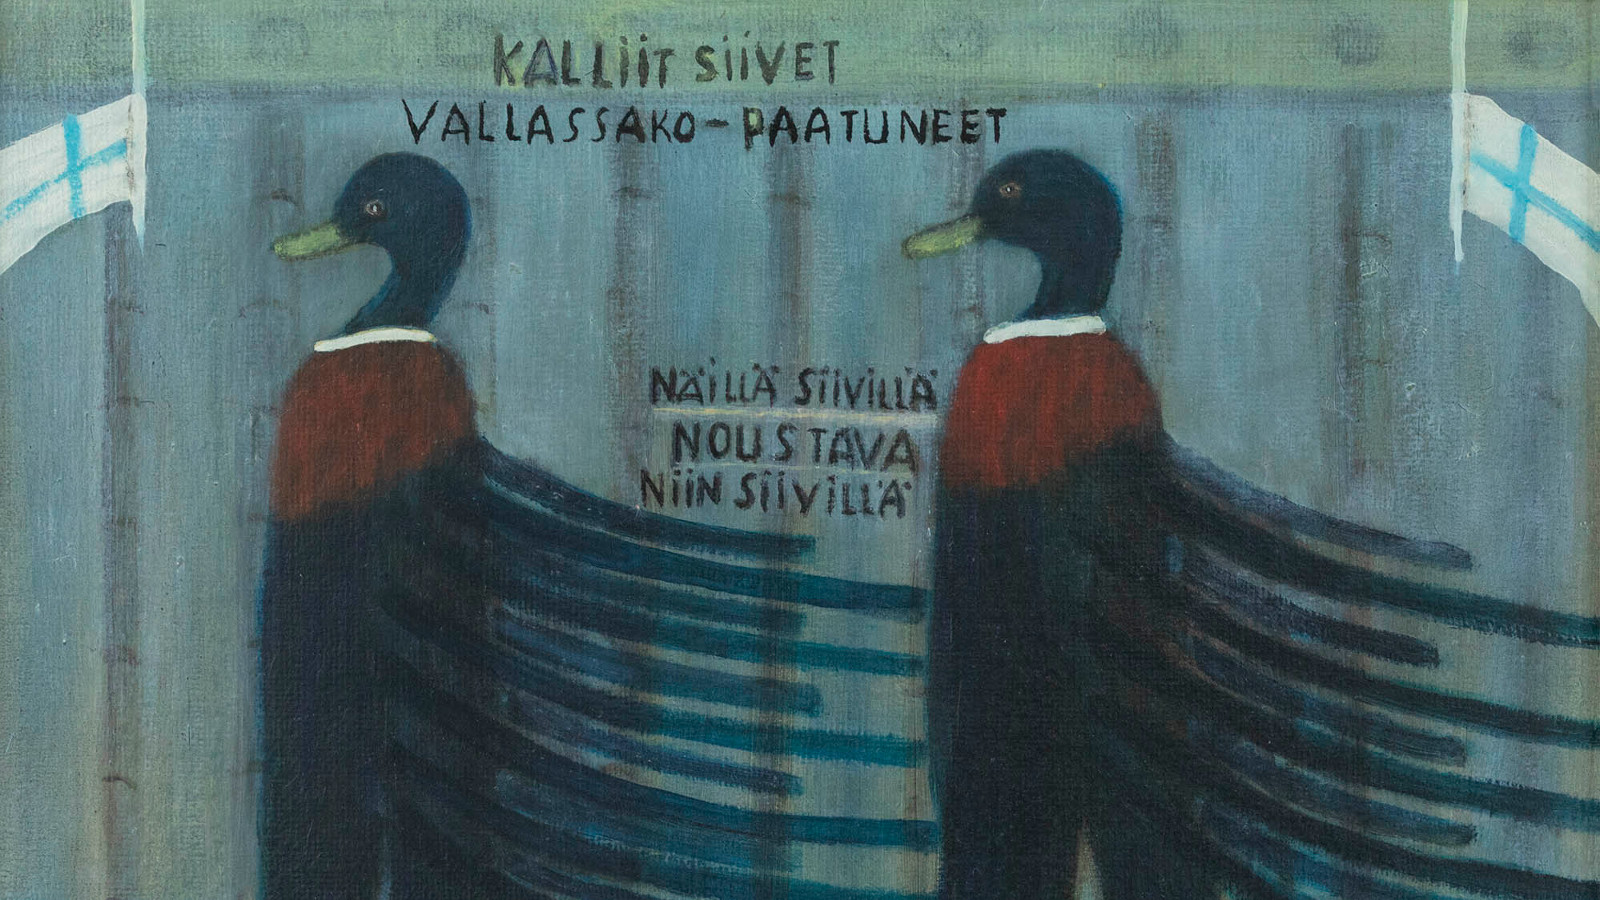 Kuvassa on kaksi sorsamaista lintua kävelemässä ja niillä on tumman siniset päät ja vihreät nokat sekä tumman siniset siivet.  Sini-harmaalla seinällä lukee Kalliit siivet -vallassako paatuneet. Kuvan molemmissa reunoissa on Suomen liput puolitangossa. 